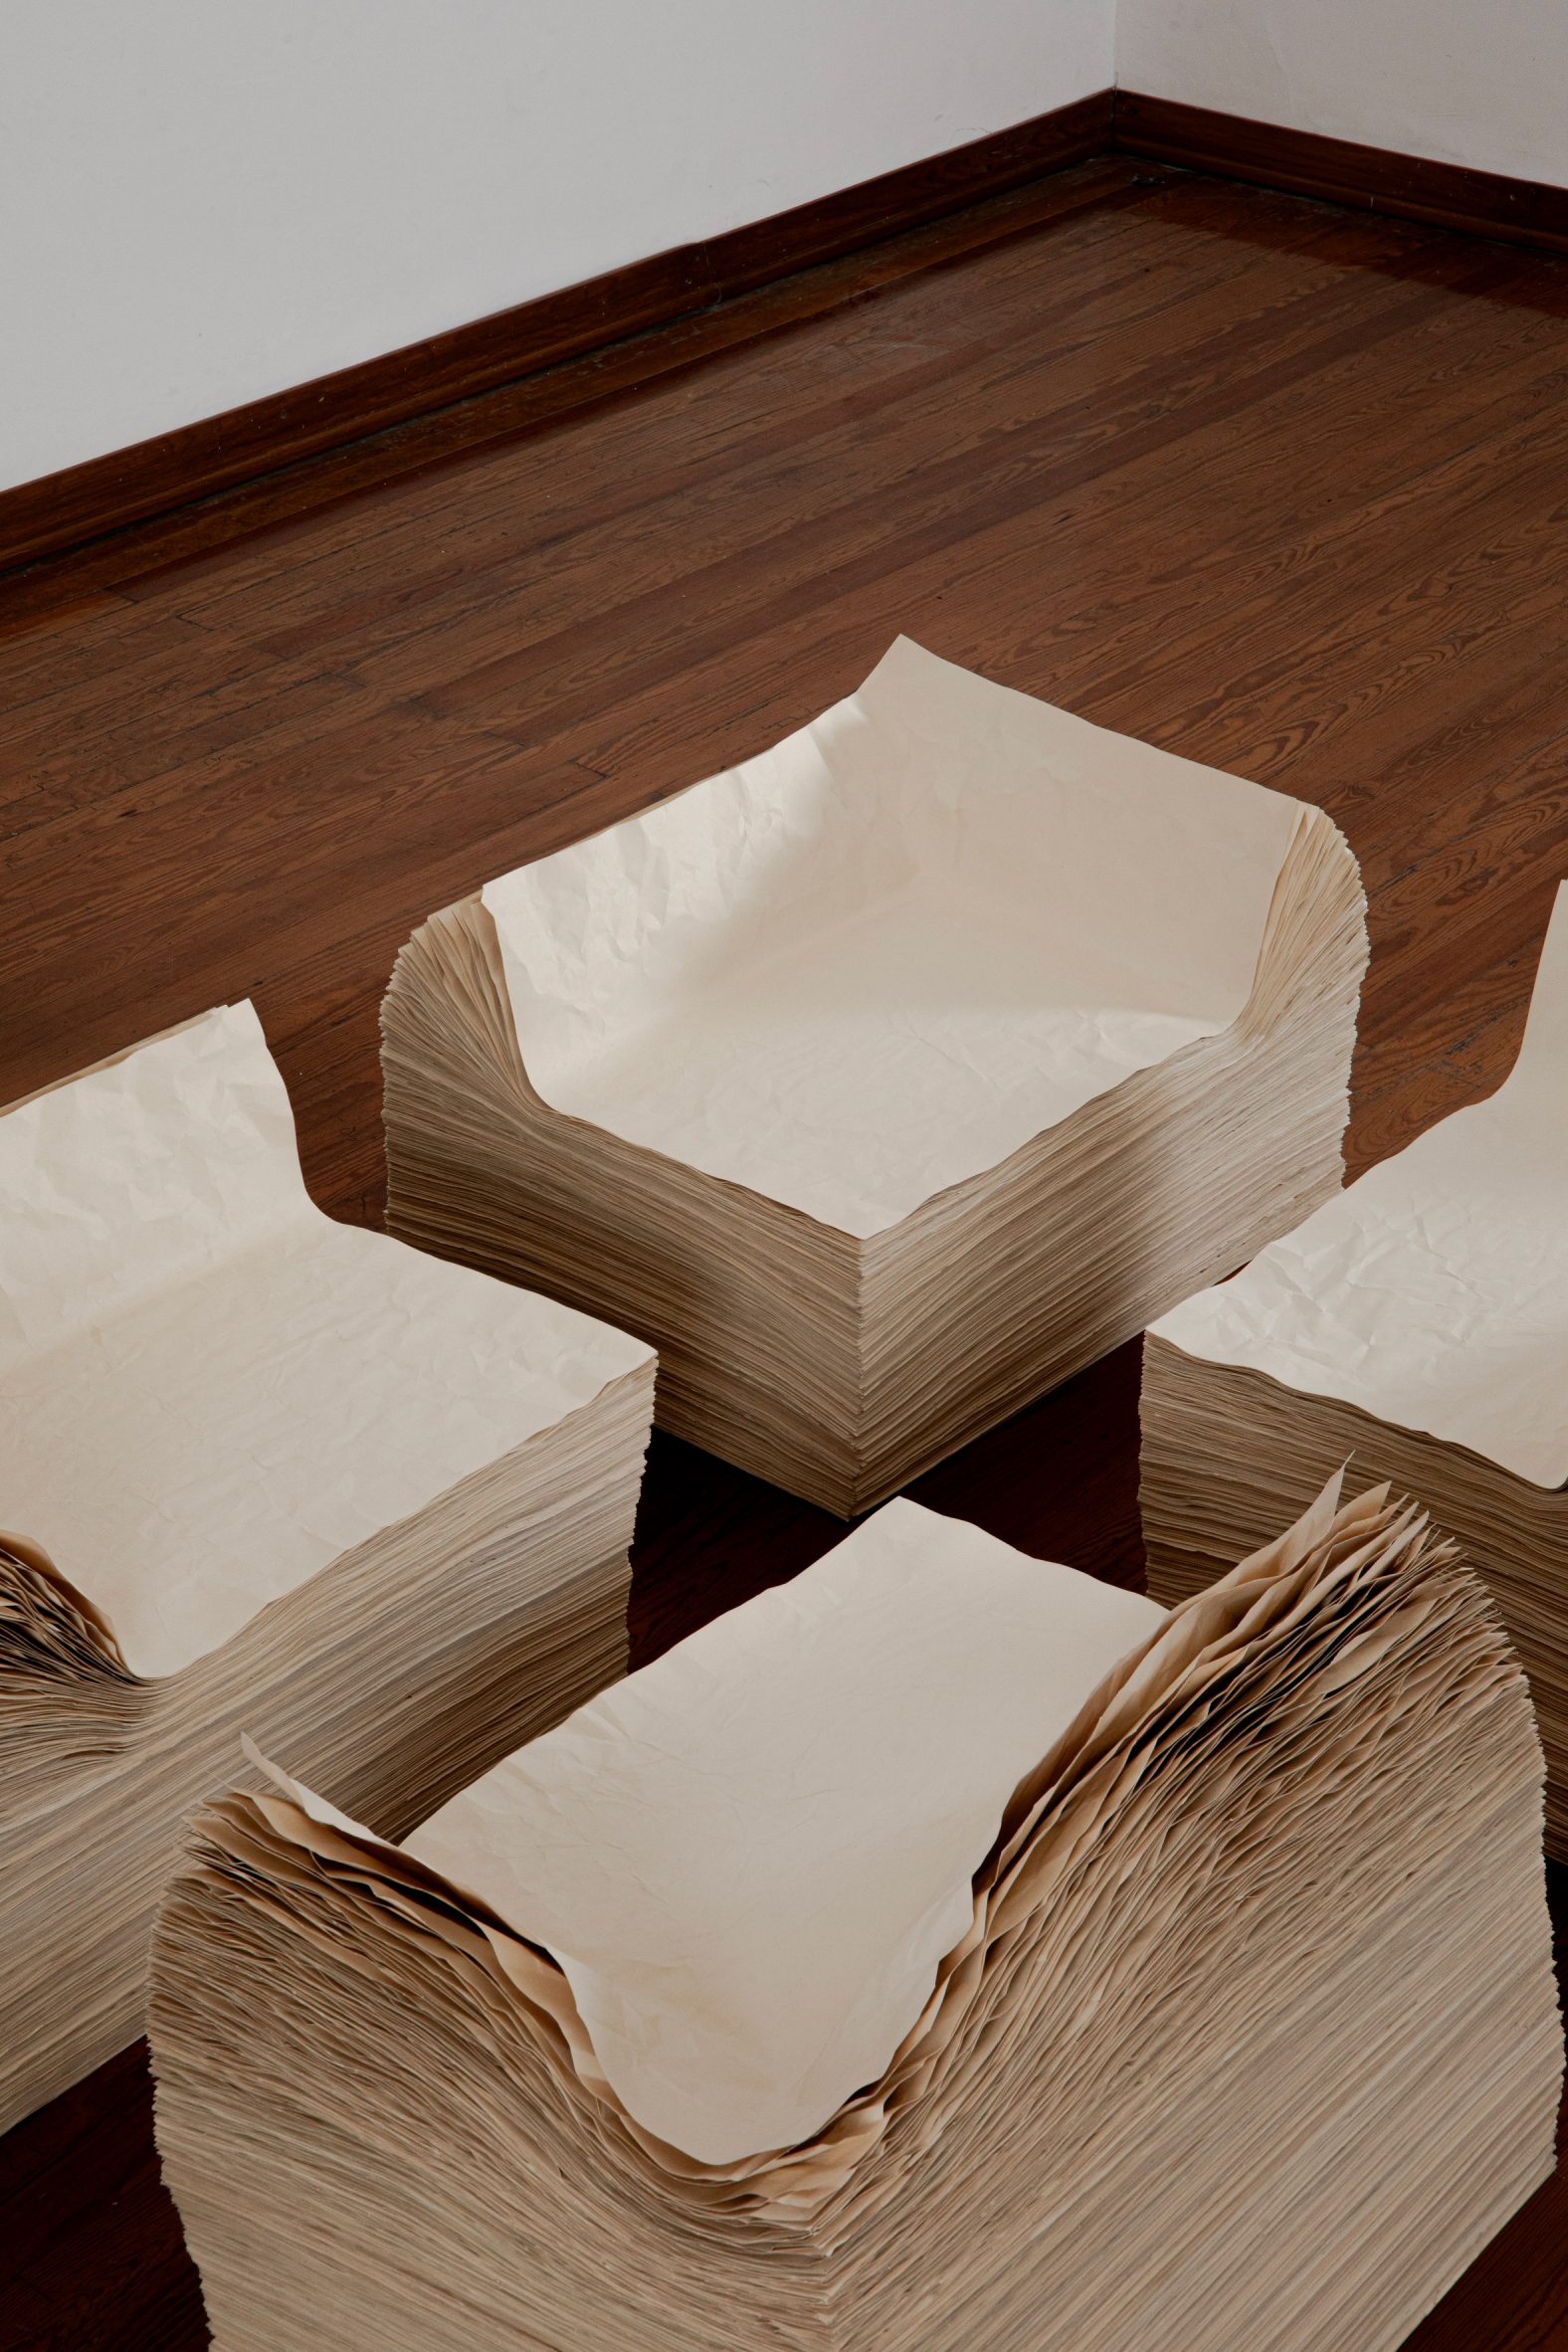 Detail of paper chairsDetail of paper chairs